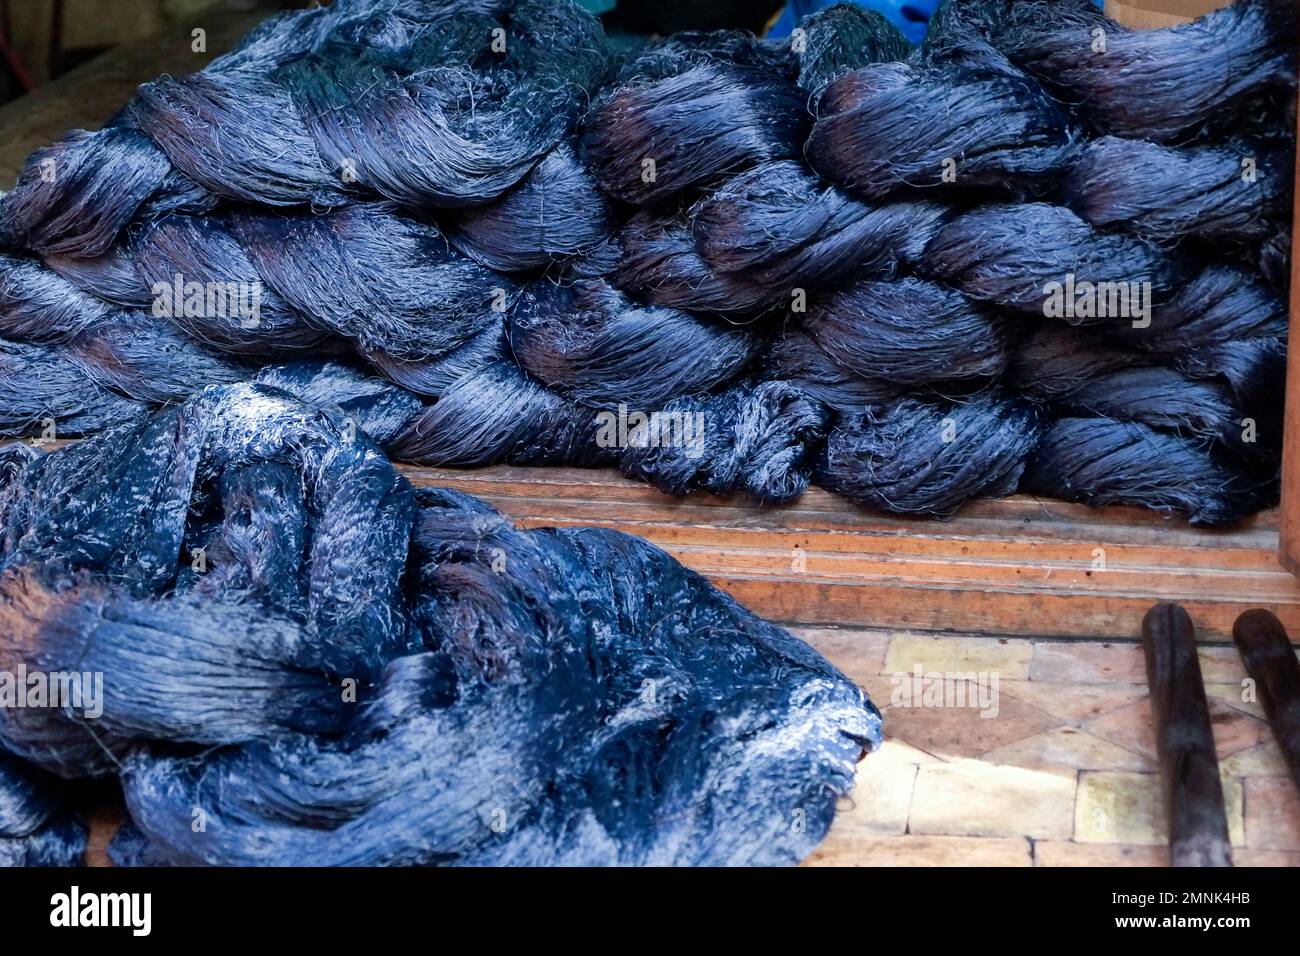 FES, Maroc Skeins de soie agave fraîchement teints en indigo Banque D'Images